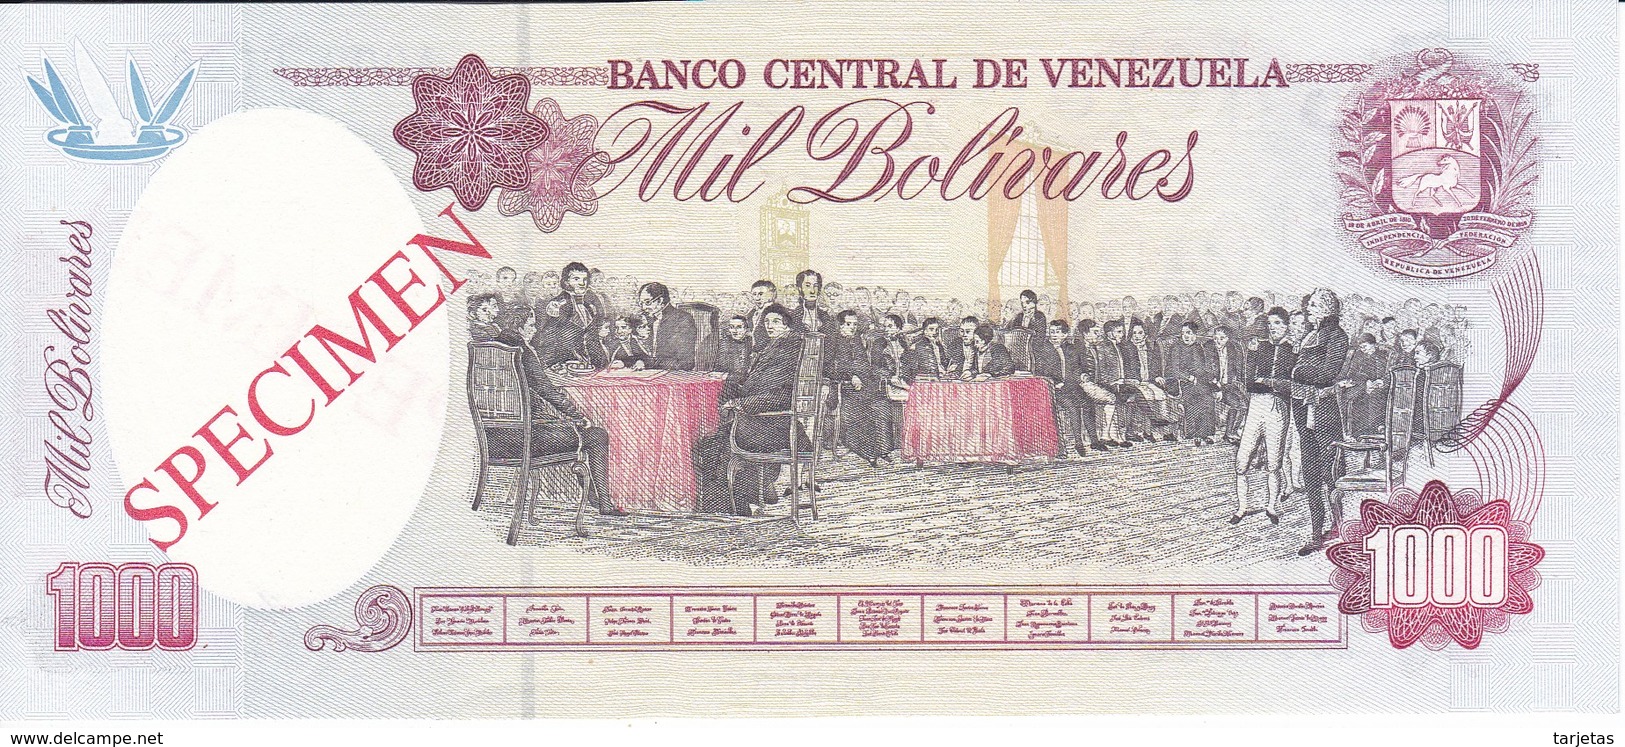 ESPECIMEN -BILLETE DE VENEZUELA DE 1000 BOLIVARES DEL AÑO 1992 SIN CIRCULAR-UNCIRCULATED (SPECIMEN) (BANKNOTE) MUY RARO - Venezuela